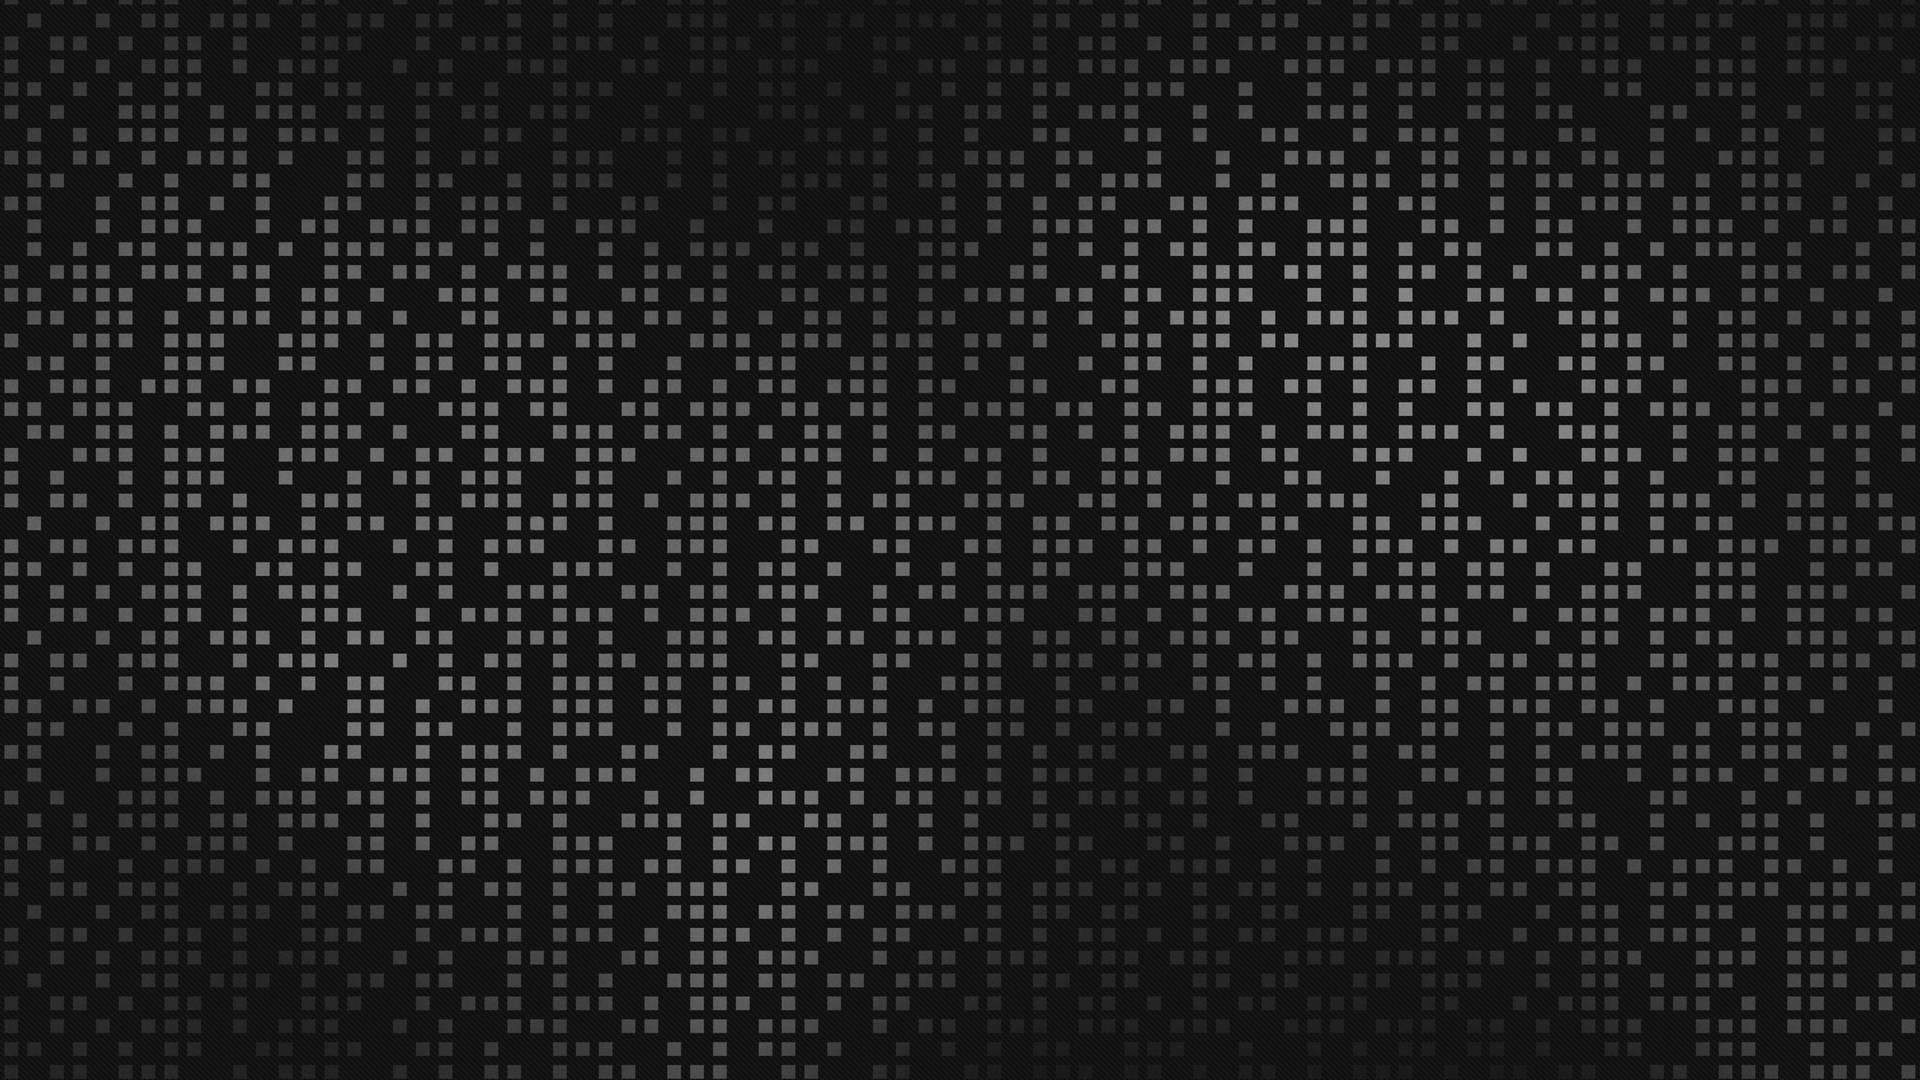 Exquisite Black Geometric Dots Design In 4k Ultra Hd